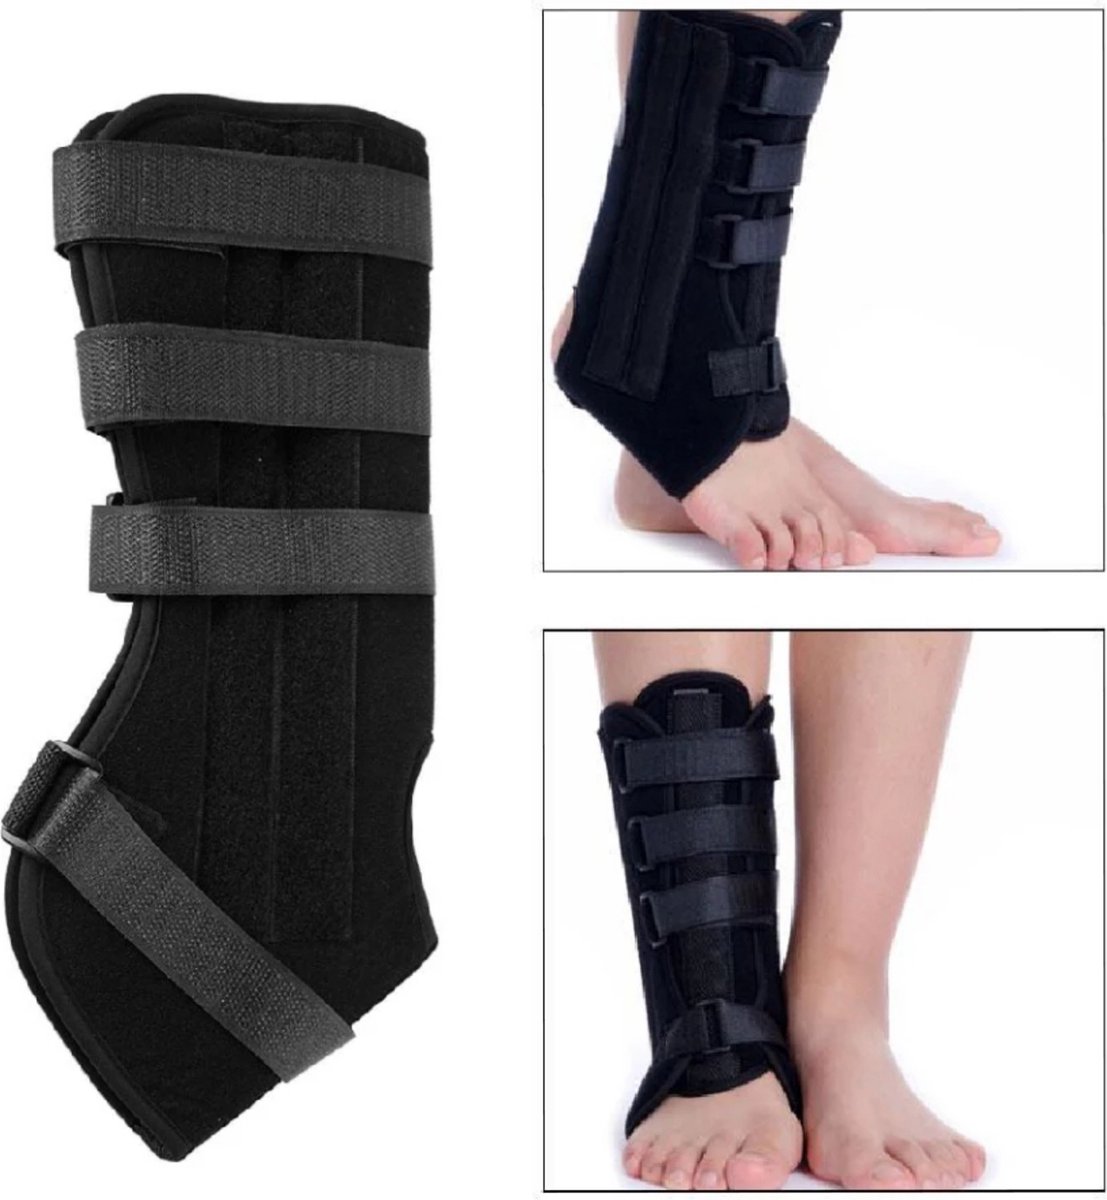 Ankle brace, voet brace, enkelbrace, enkel brace Maat L, enkel ondersteuning, enkel brace, orthopedic enkelbrace, braces.